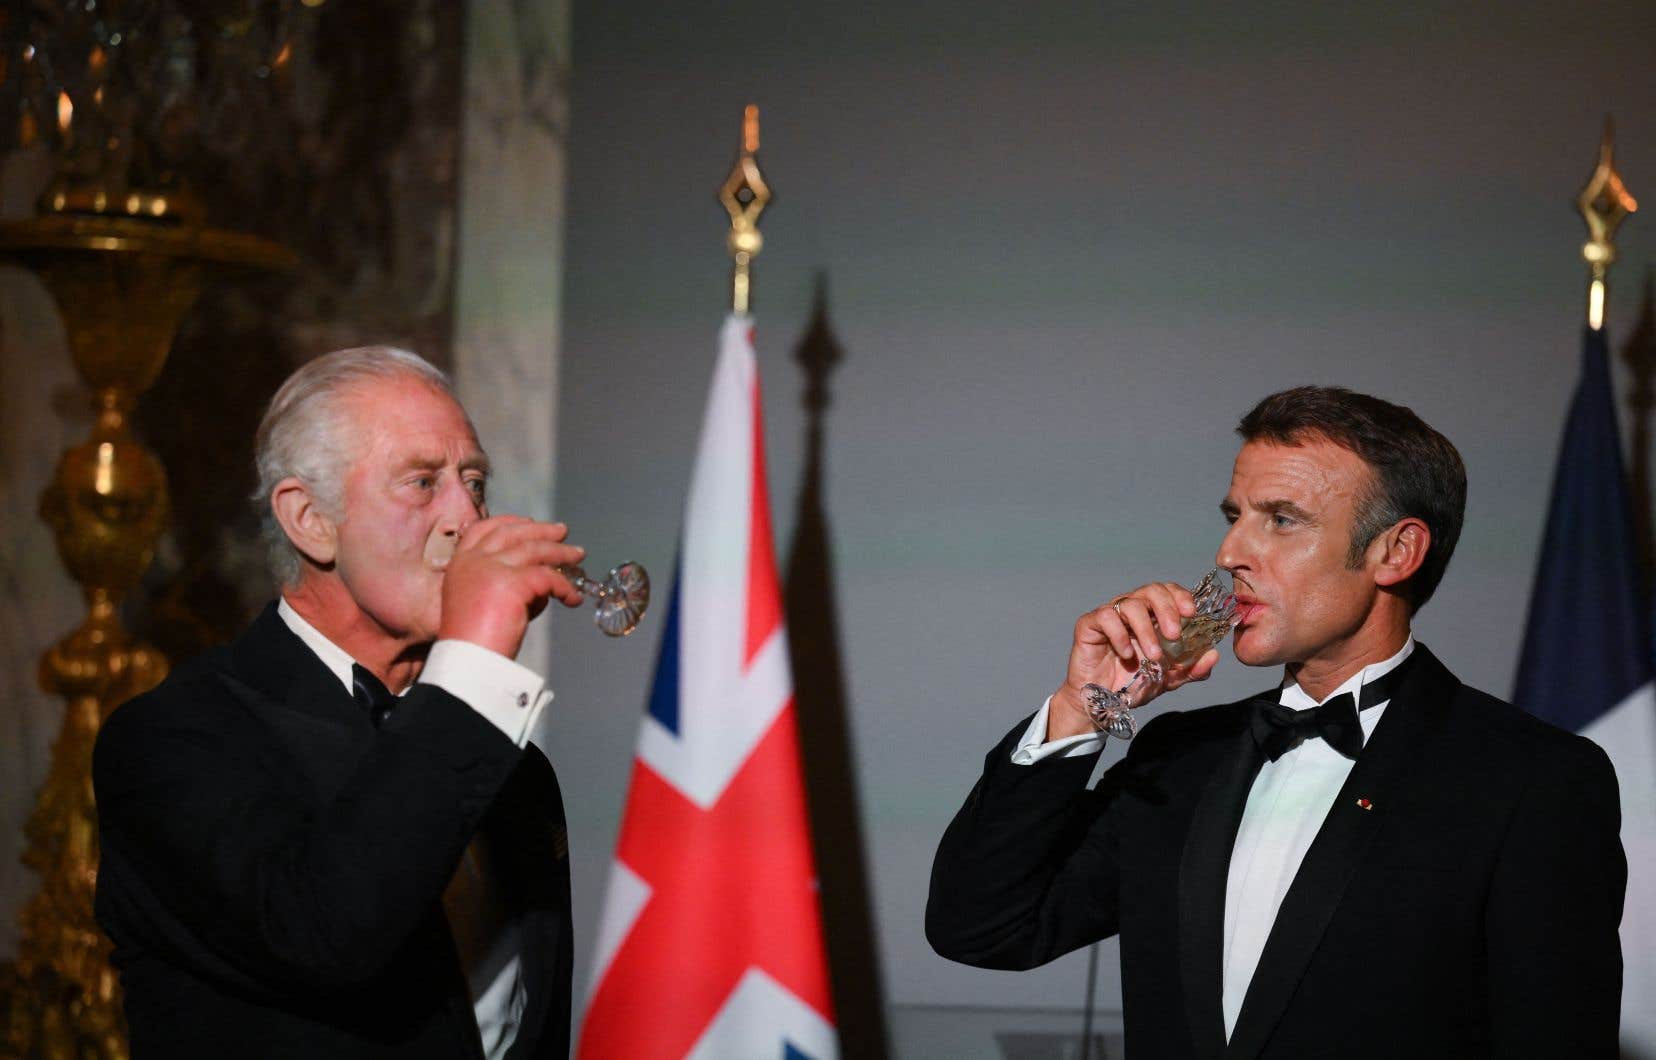 Le président français, Emmanuel Macron (à droite) et le roi Charles III boivent après un toast lors d’un repas au château de Versailles, à l’ouest de Paris, mercredi.